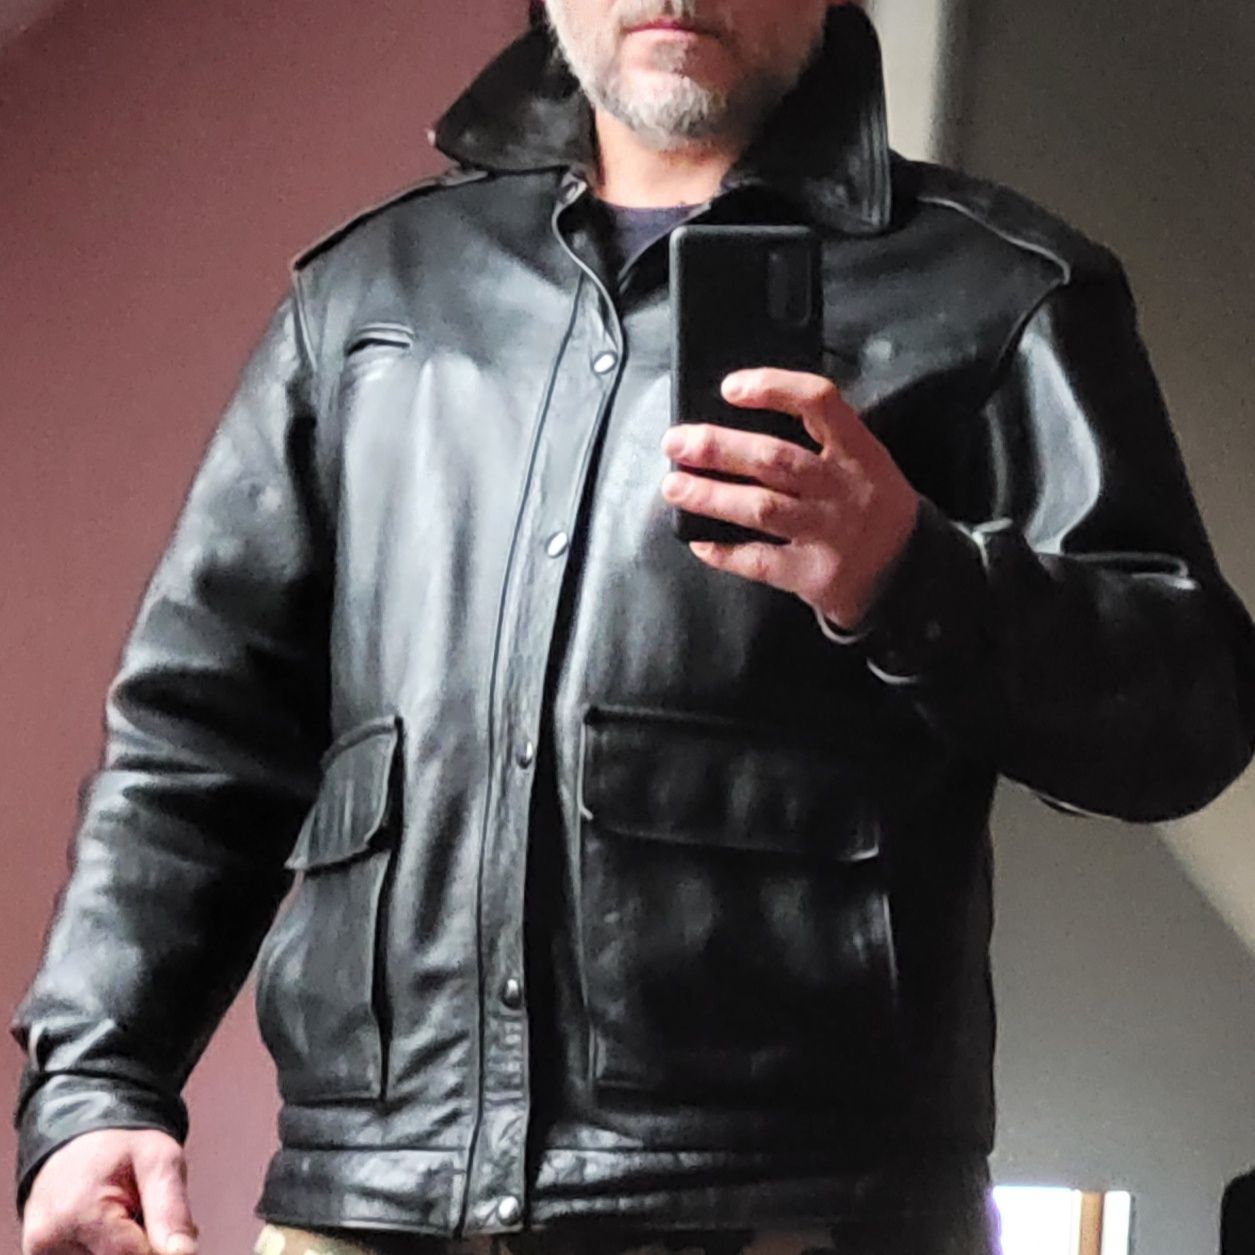 Кожаная полицейская куртка винтаж rare schott alpha